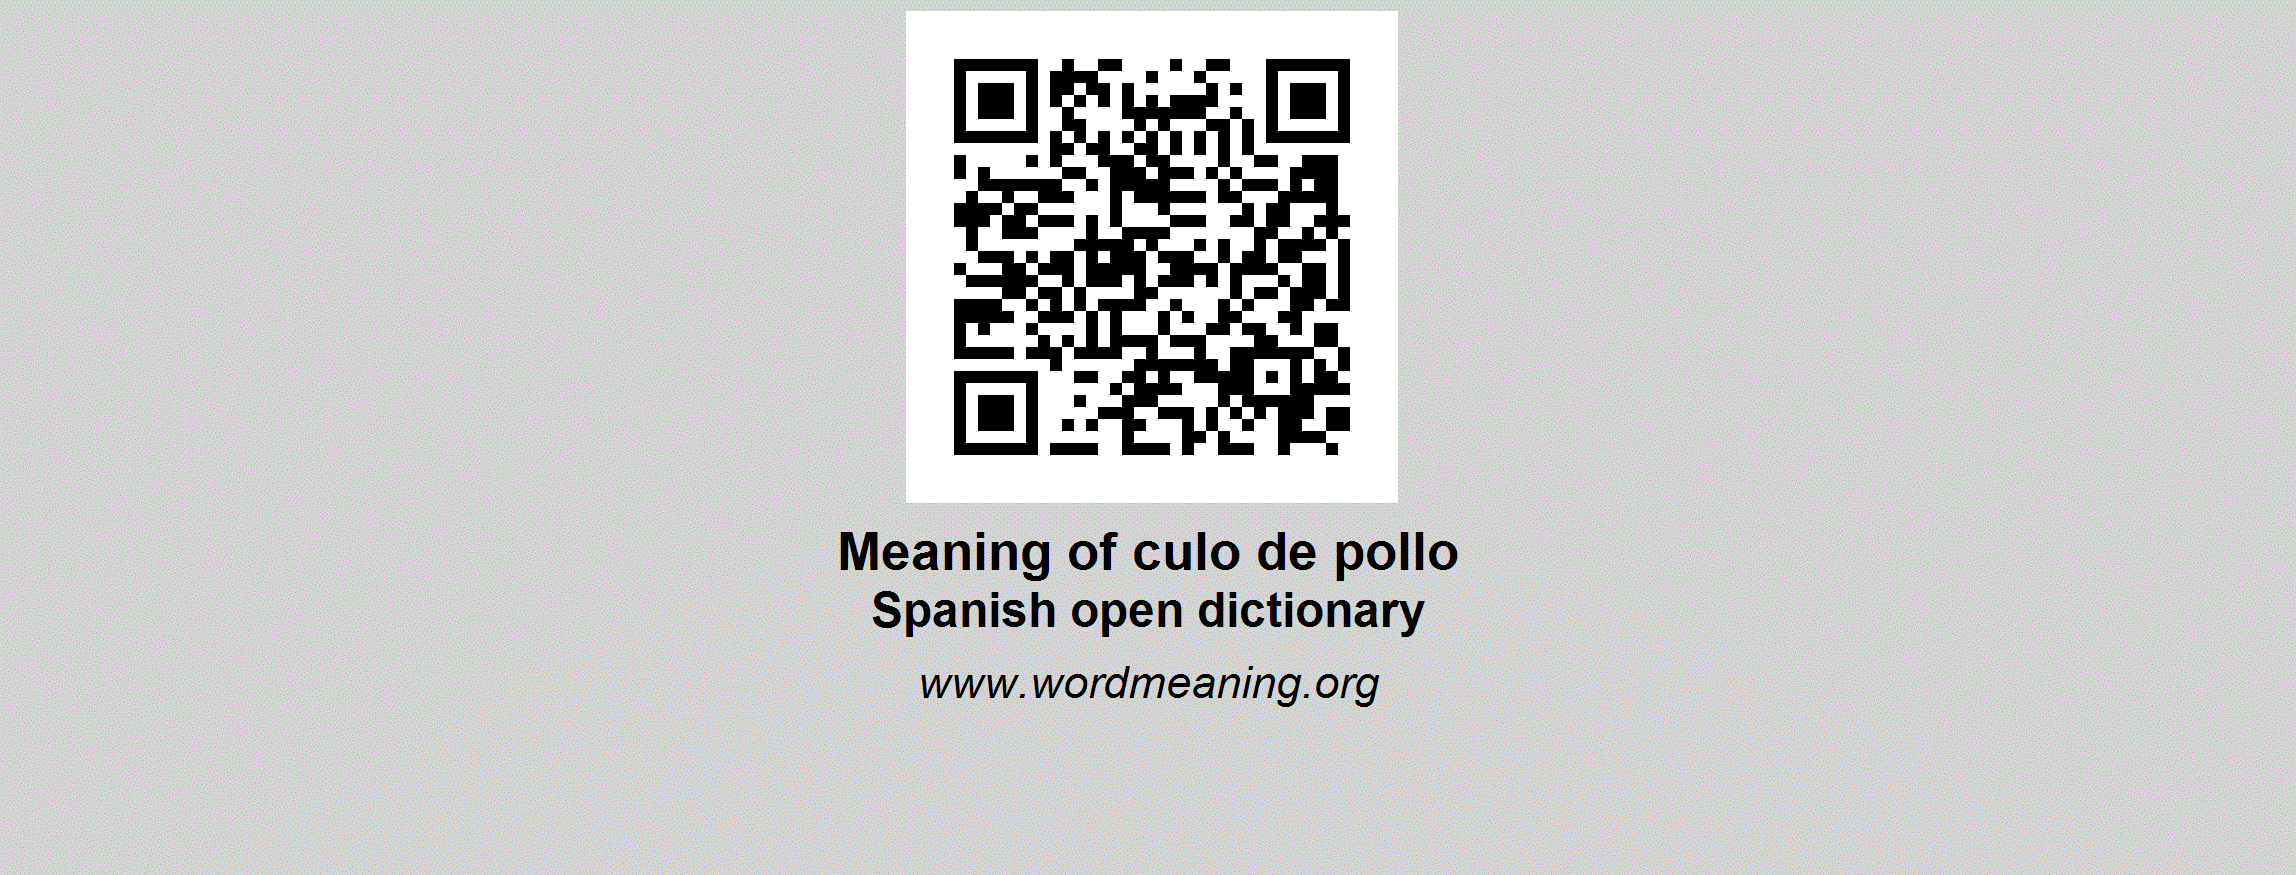 CULO DE POLLO - Spanish open dictionary